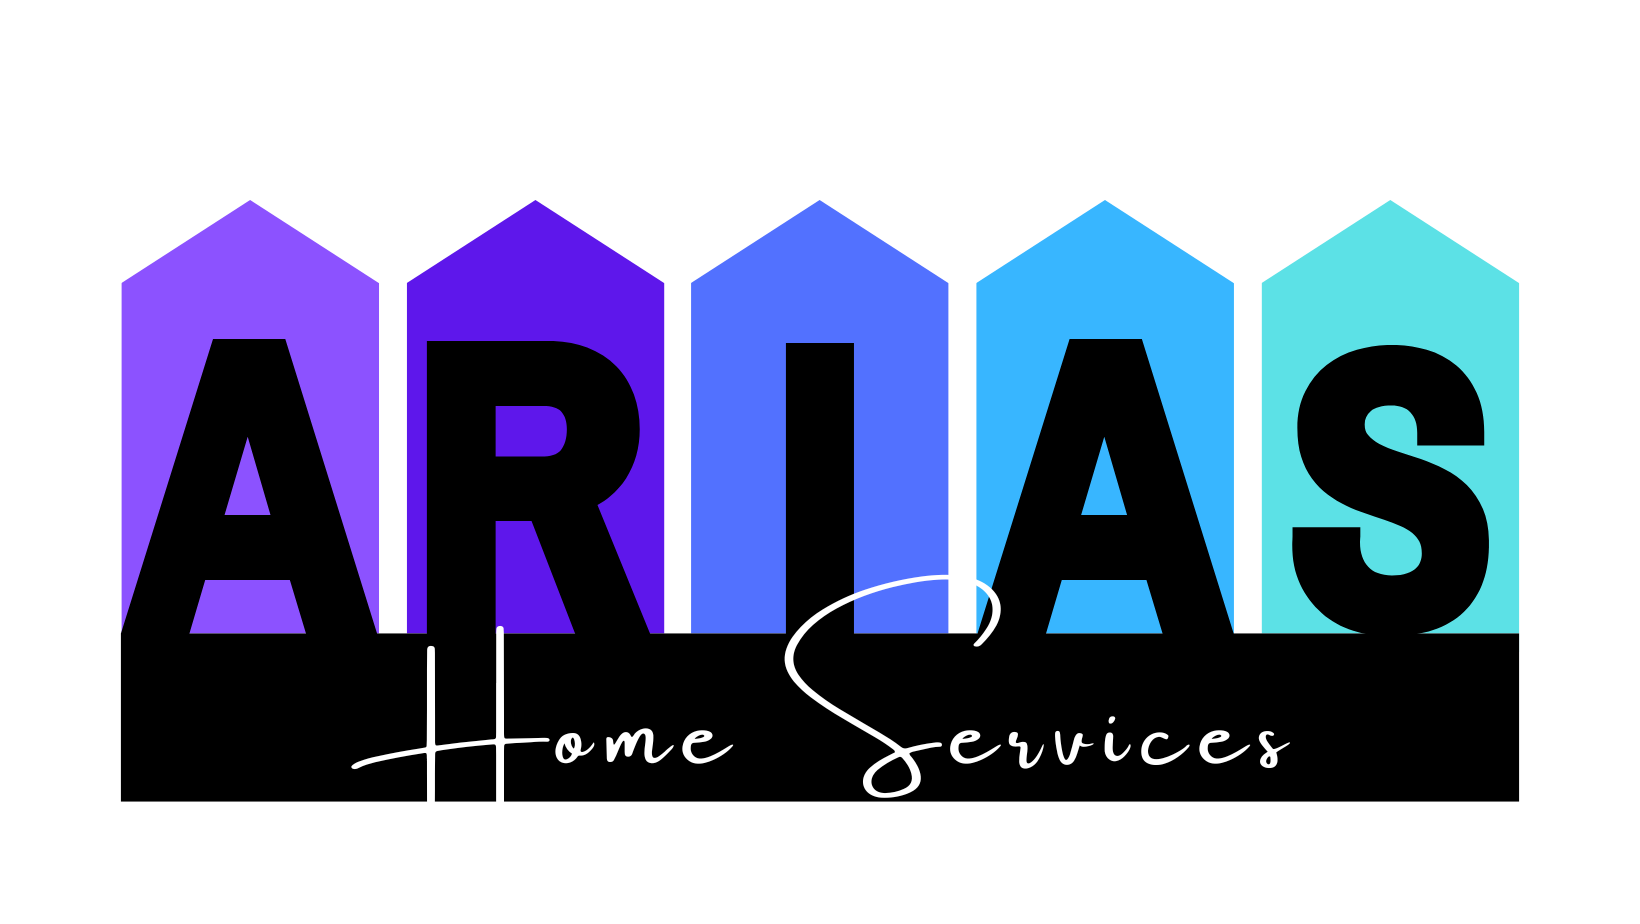 Arias Home Services Logo